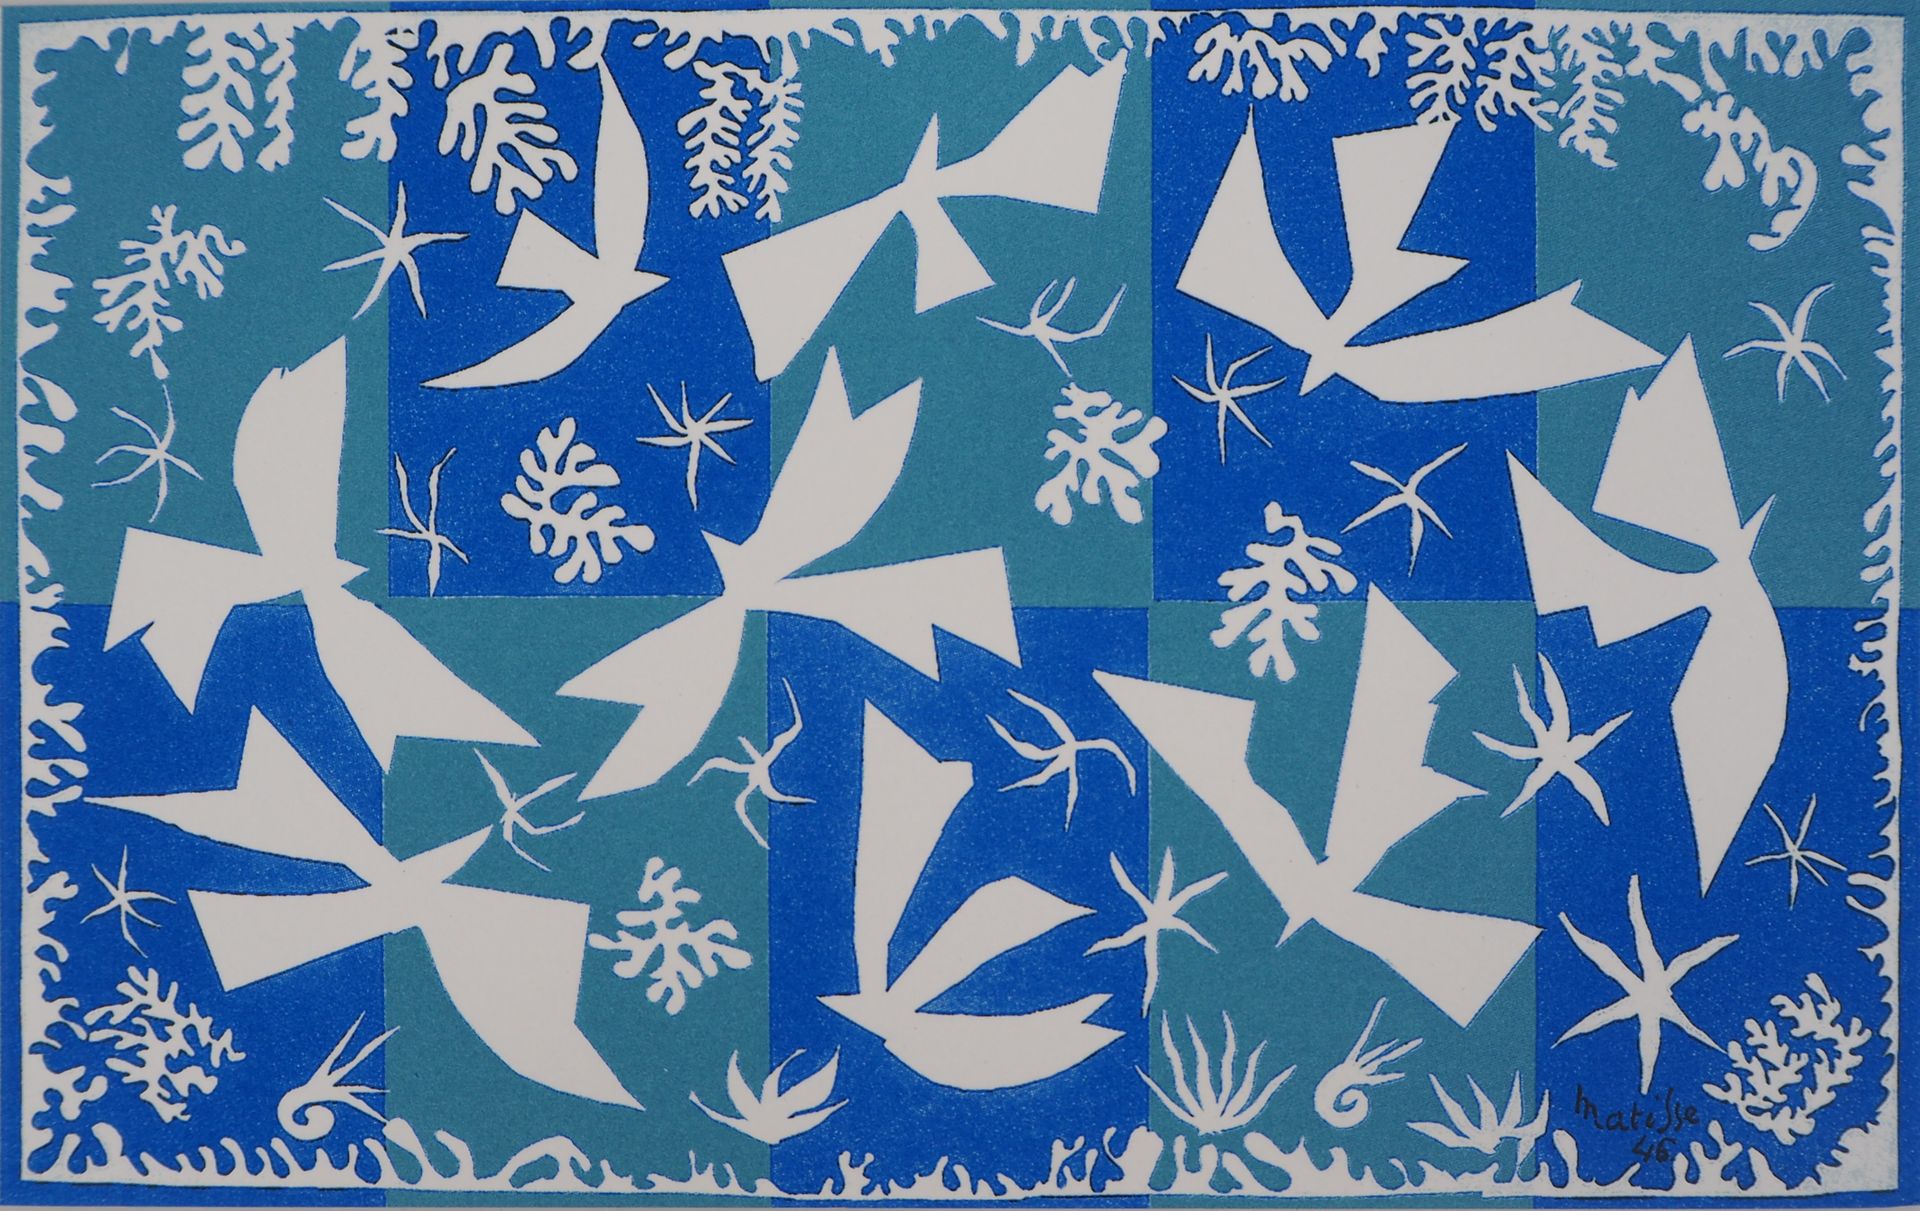 Henri MATISSE 亨利-马蒂斯(1869-1954)(后)

玻里尼西亚，天空

绢本书法

板块中的签名

在牛皮纸上

图像尺寸 13.5×21.&hellip;